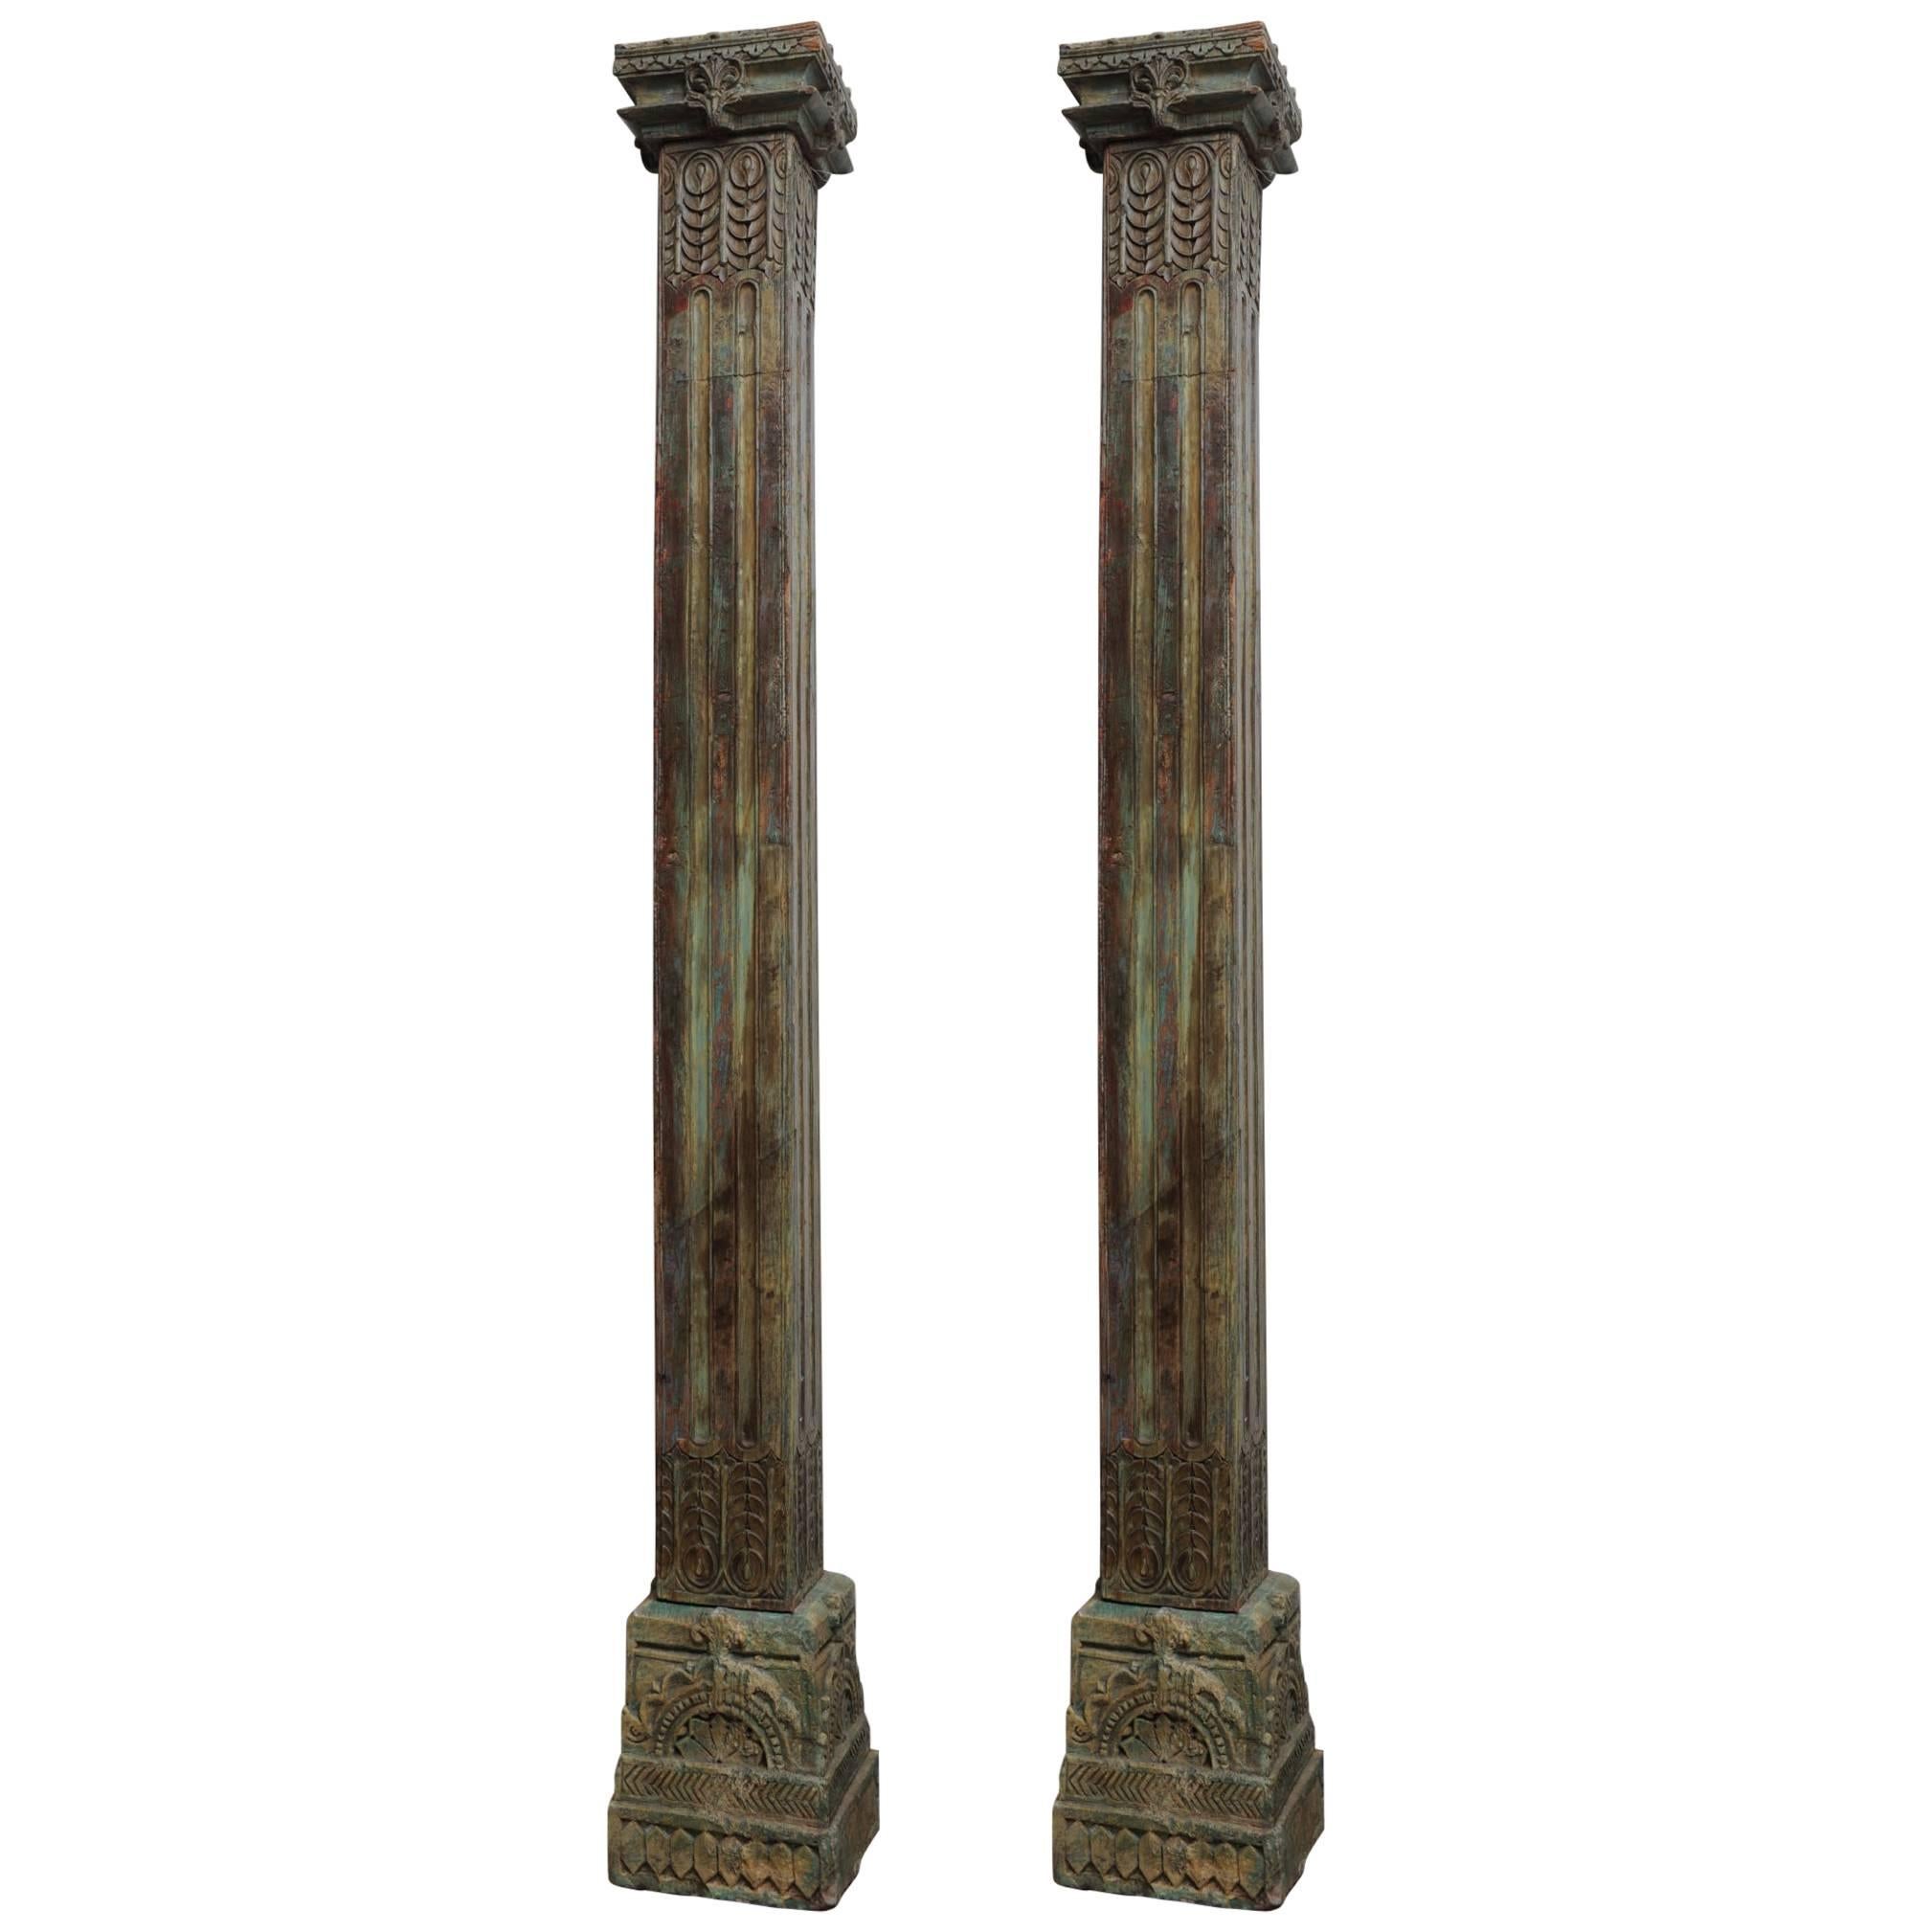 Pair of 19th Century Teak Columns with Original Paint